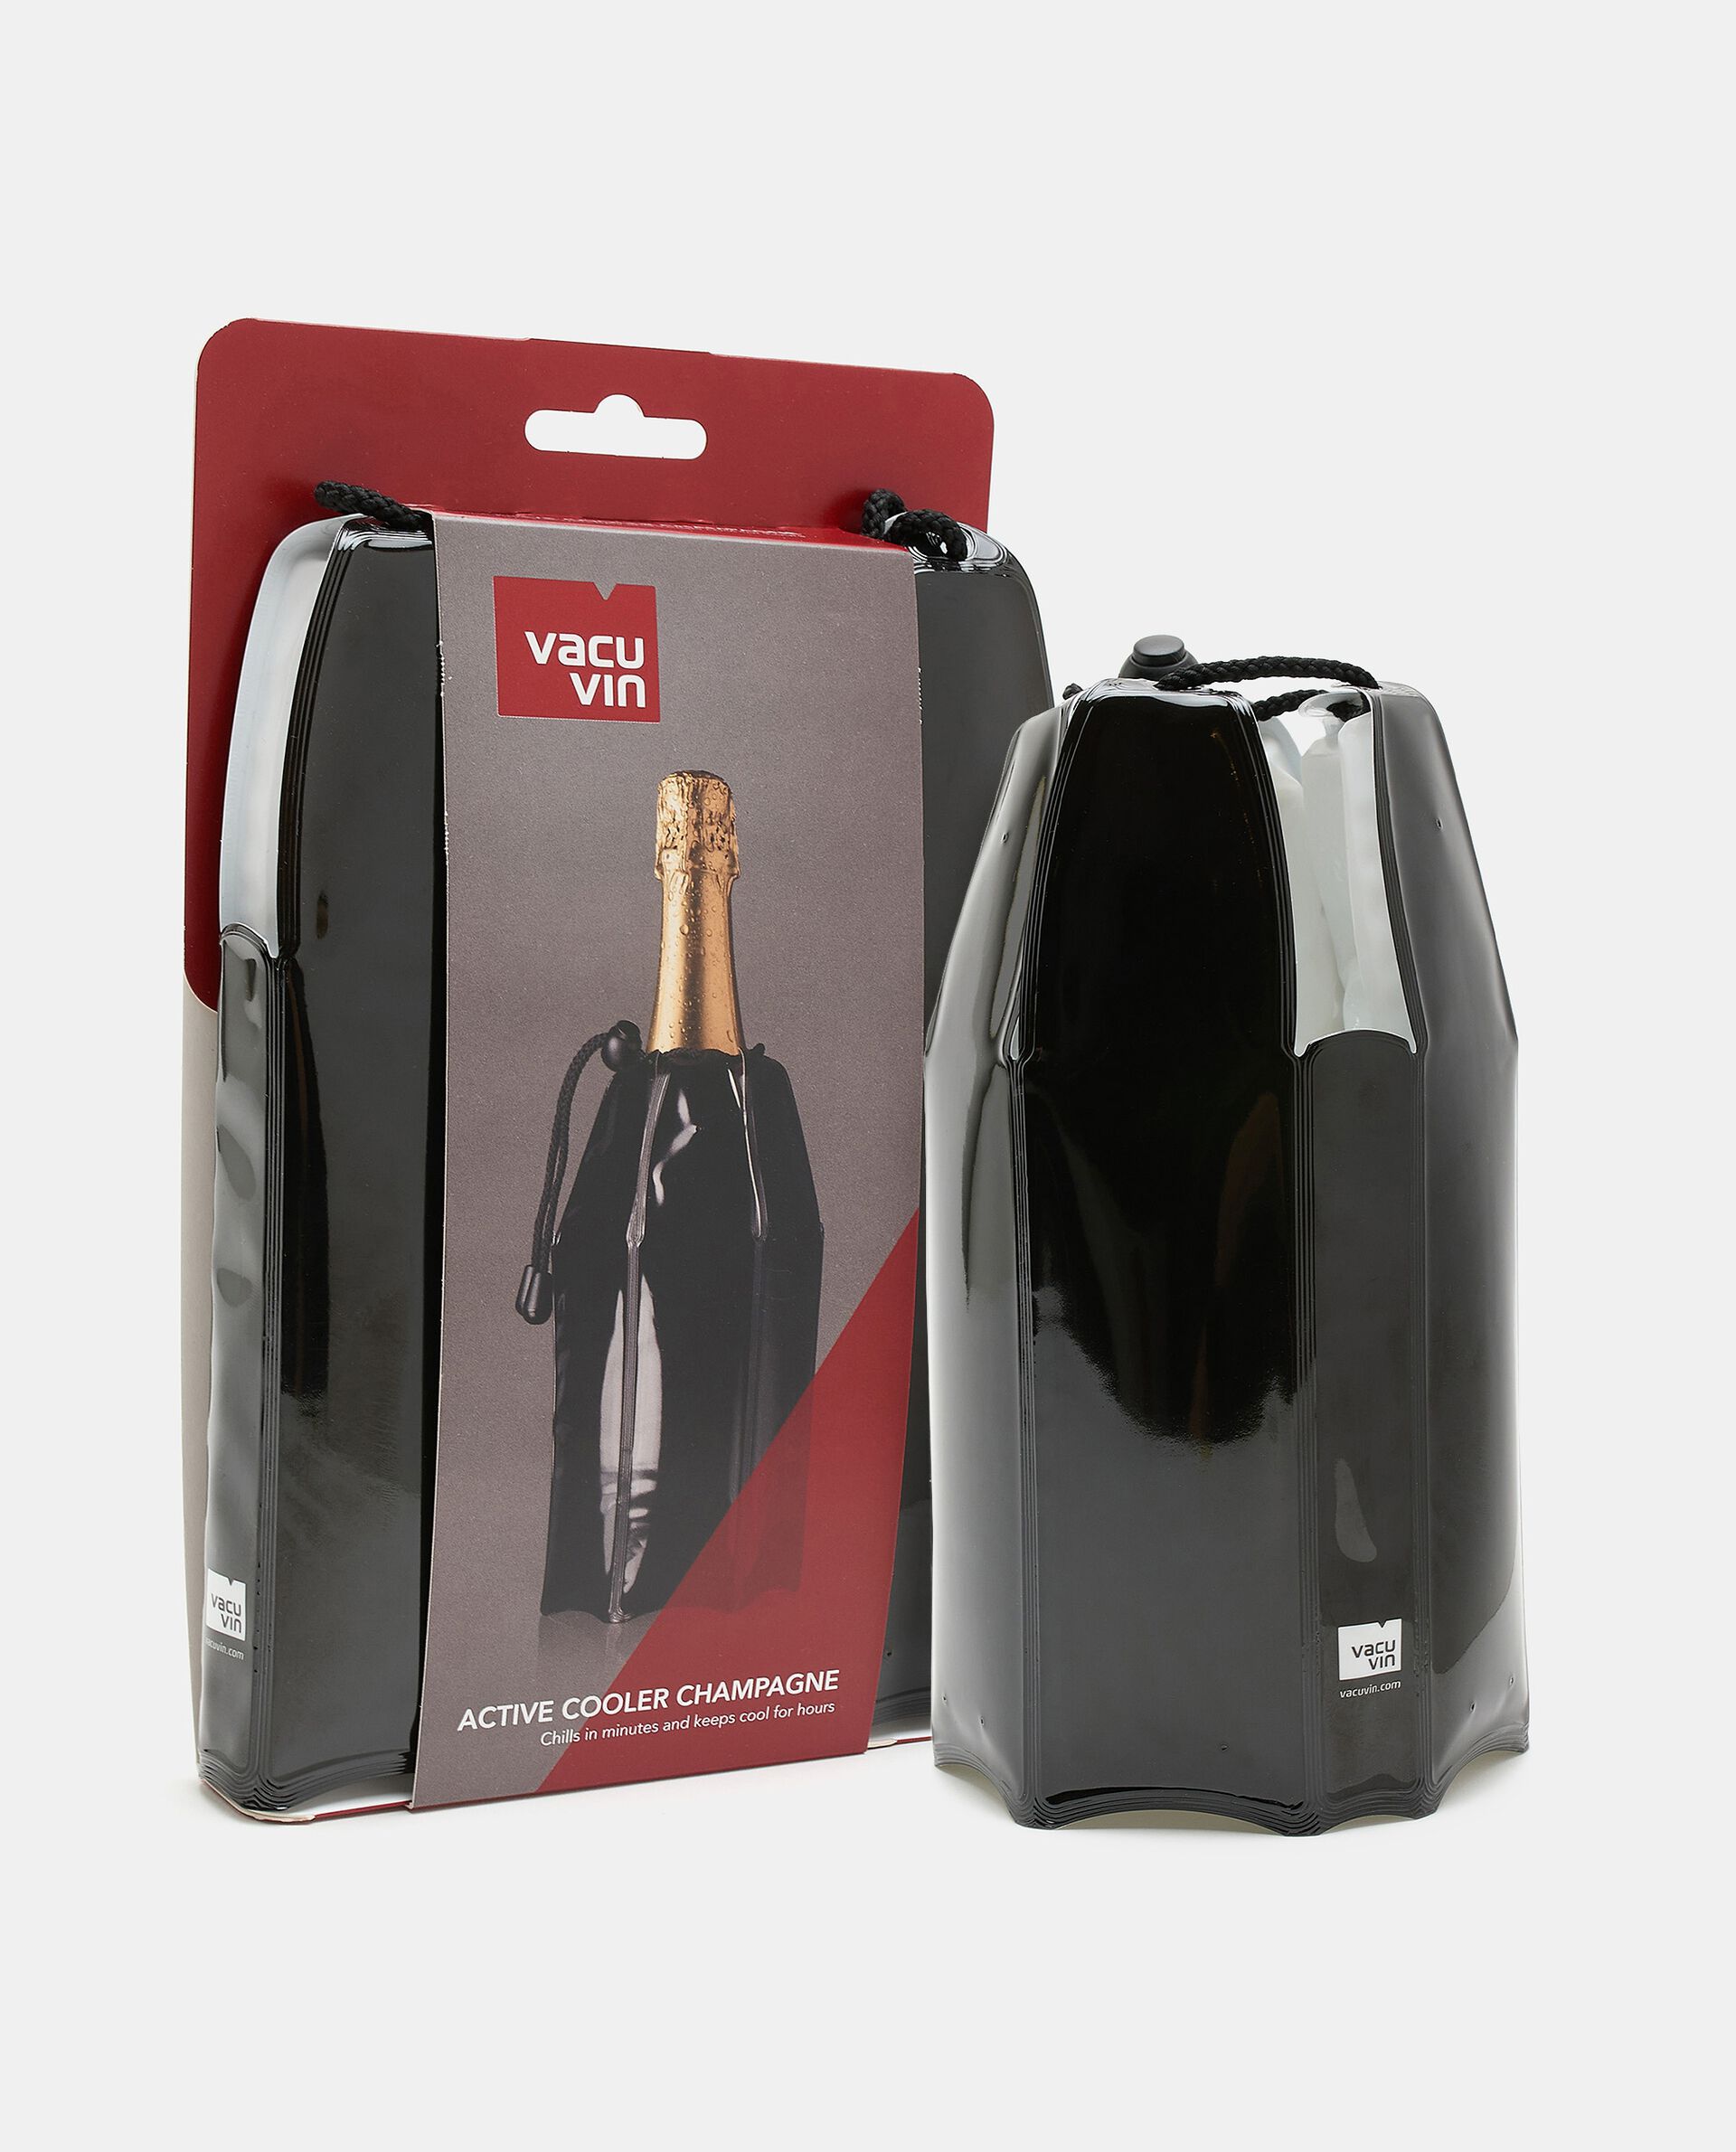 Giacchetta wine cooler per vino